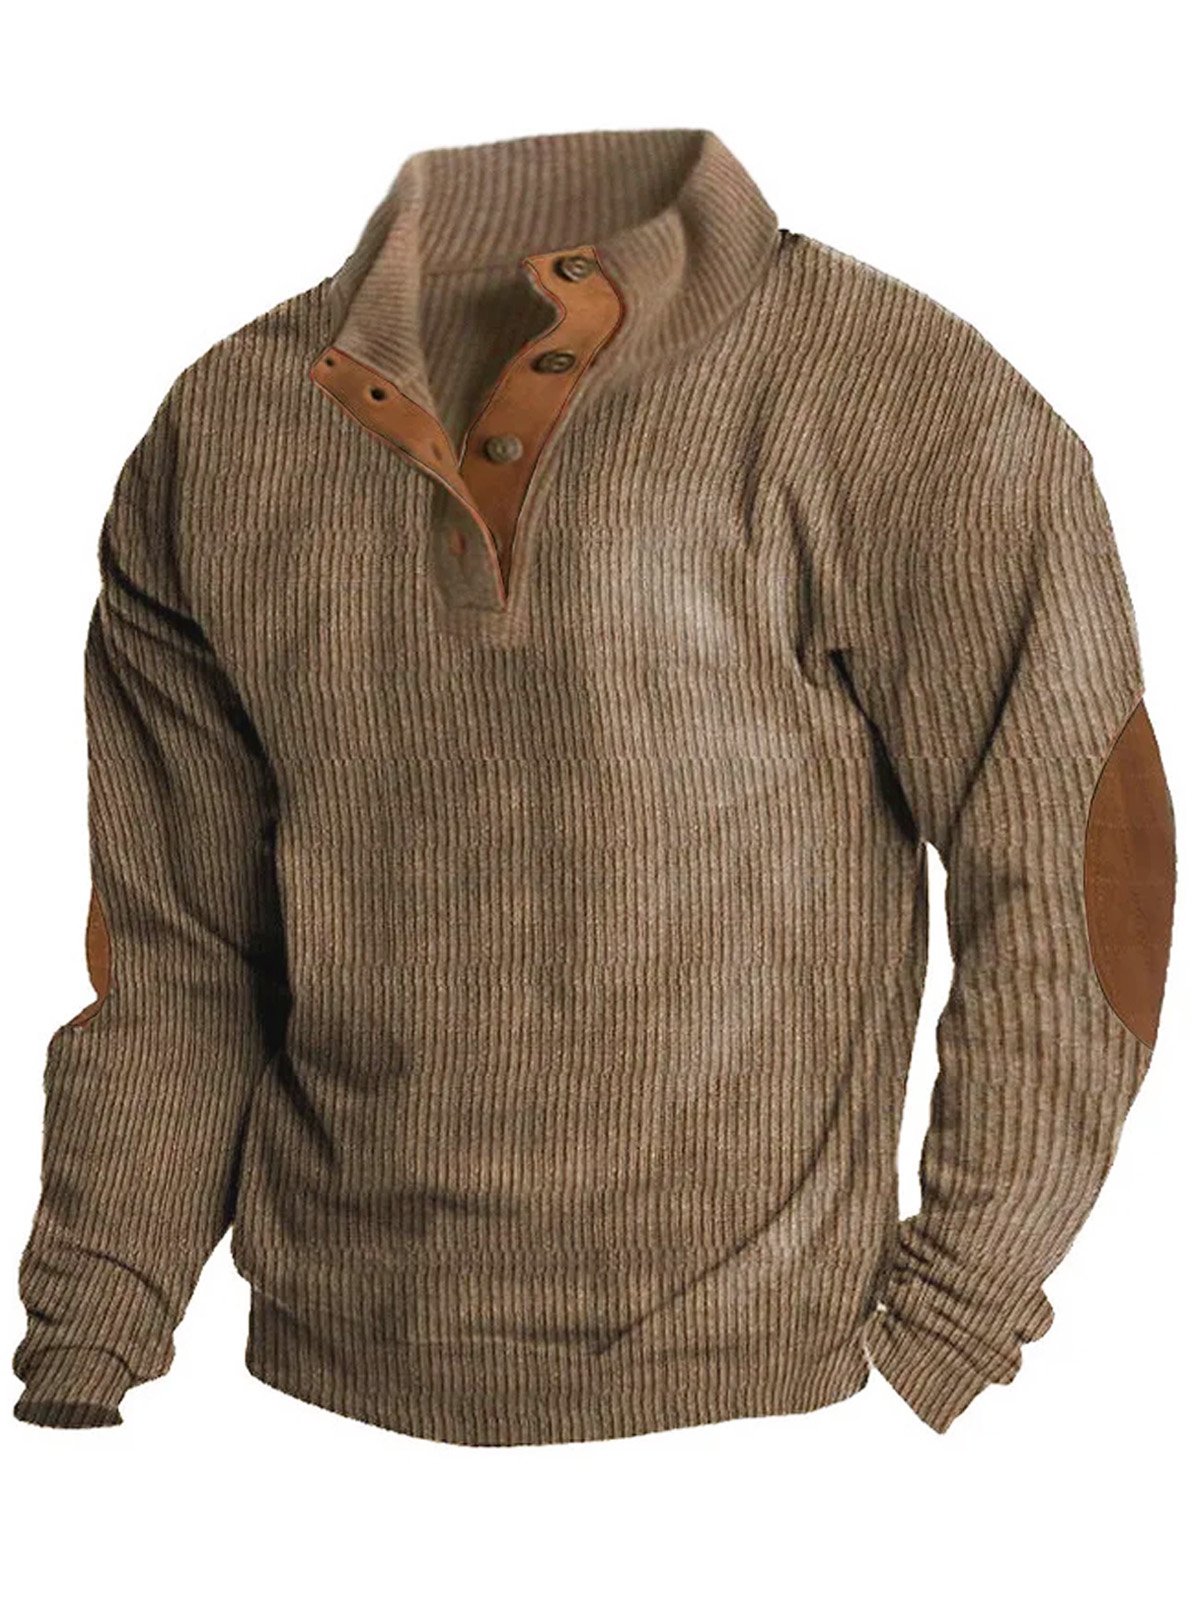 JoyMitty Men's Basic Corduroy Vintage Button Hoodie